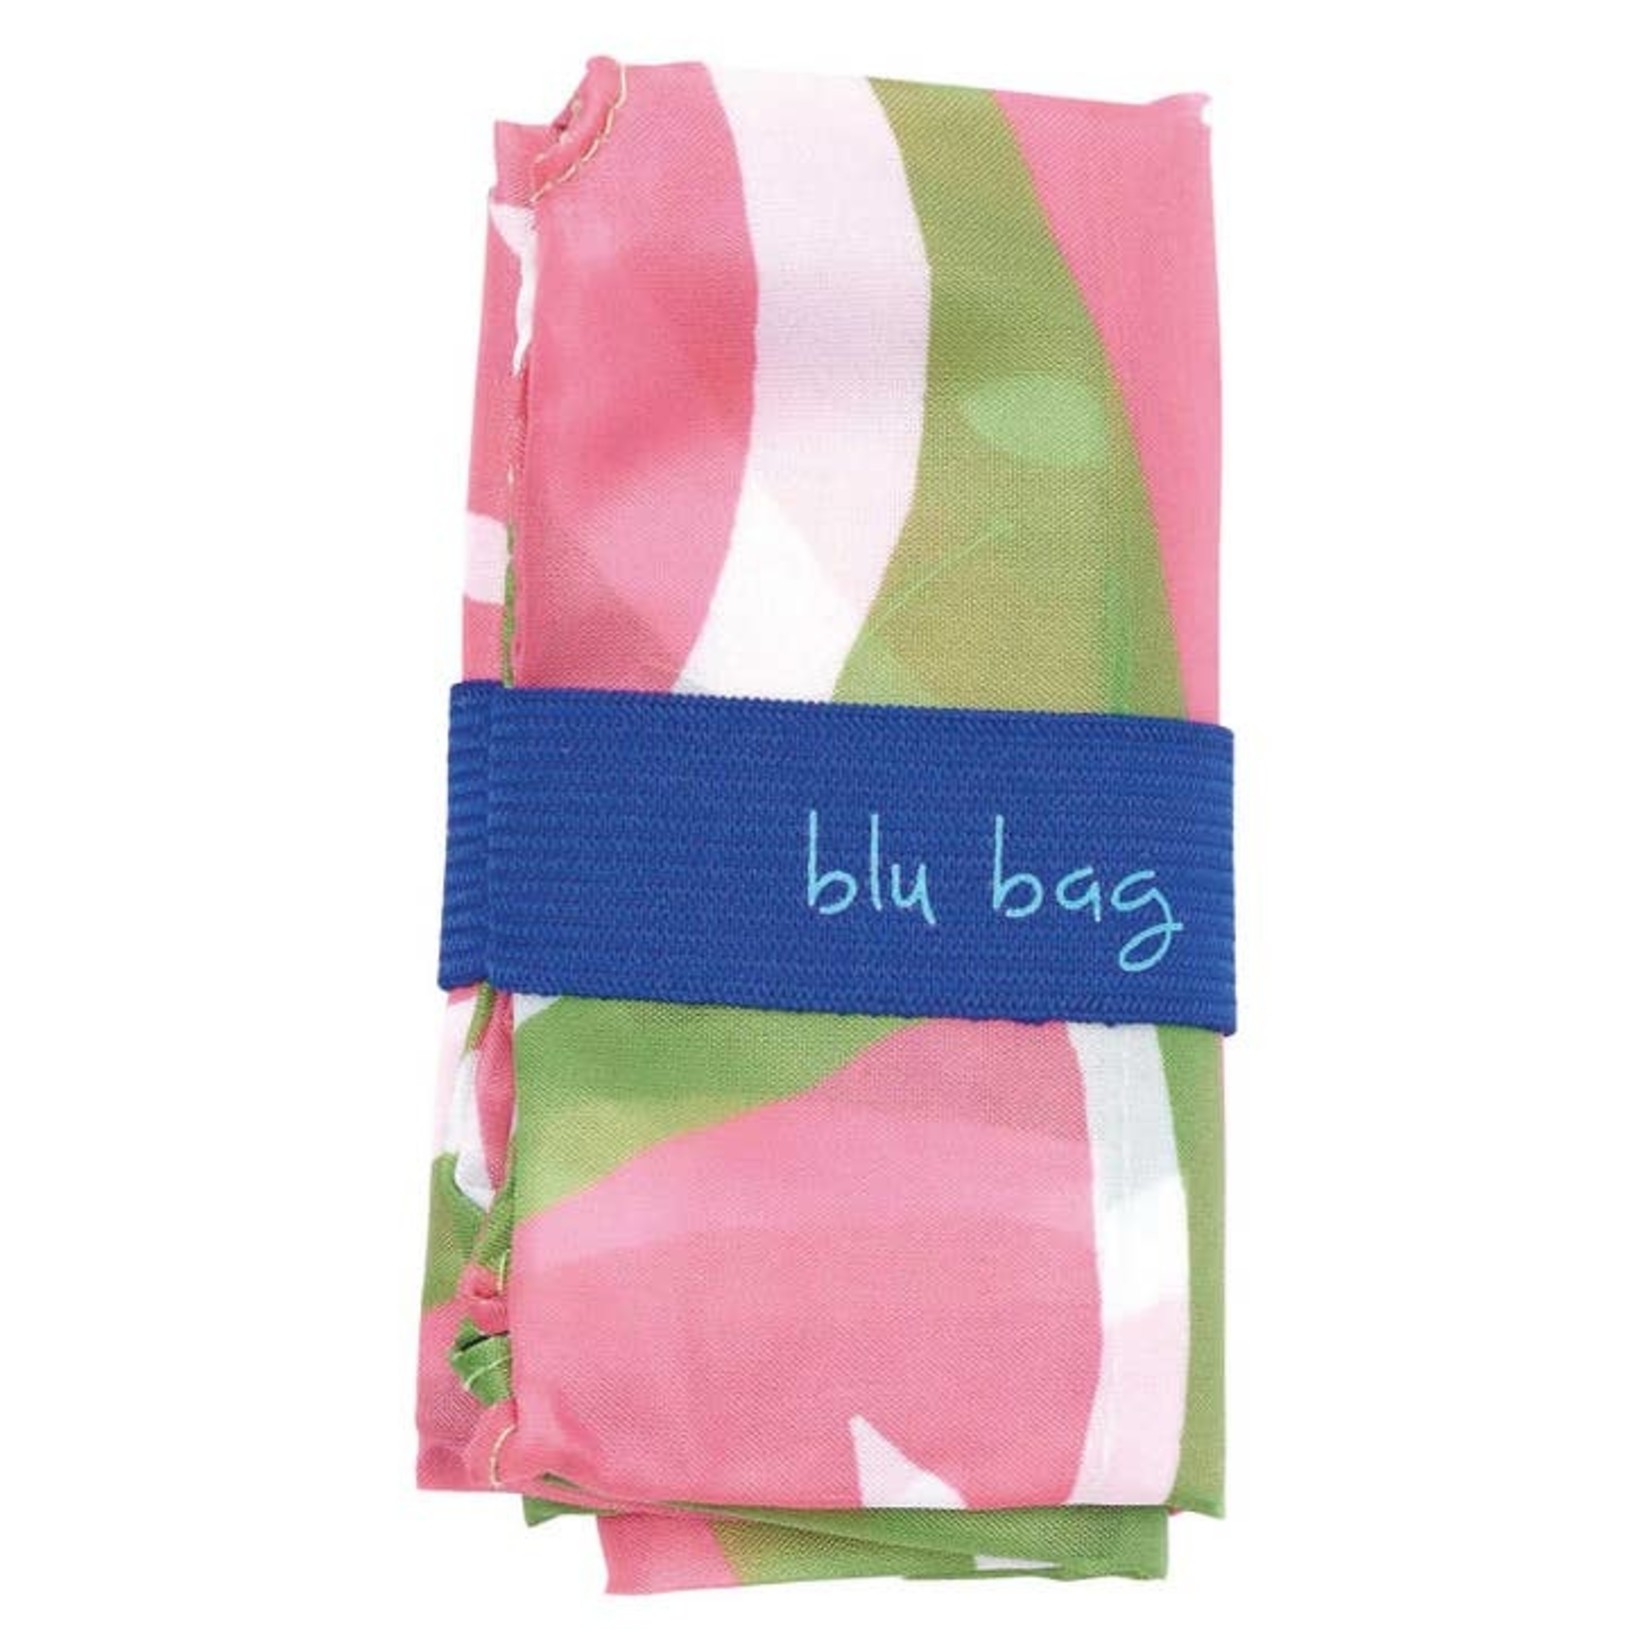 Blu Bag in Watermelon